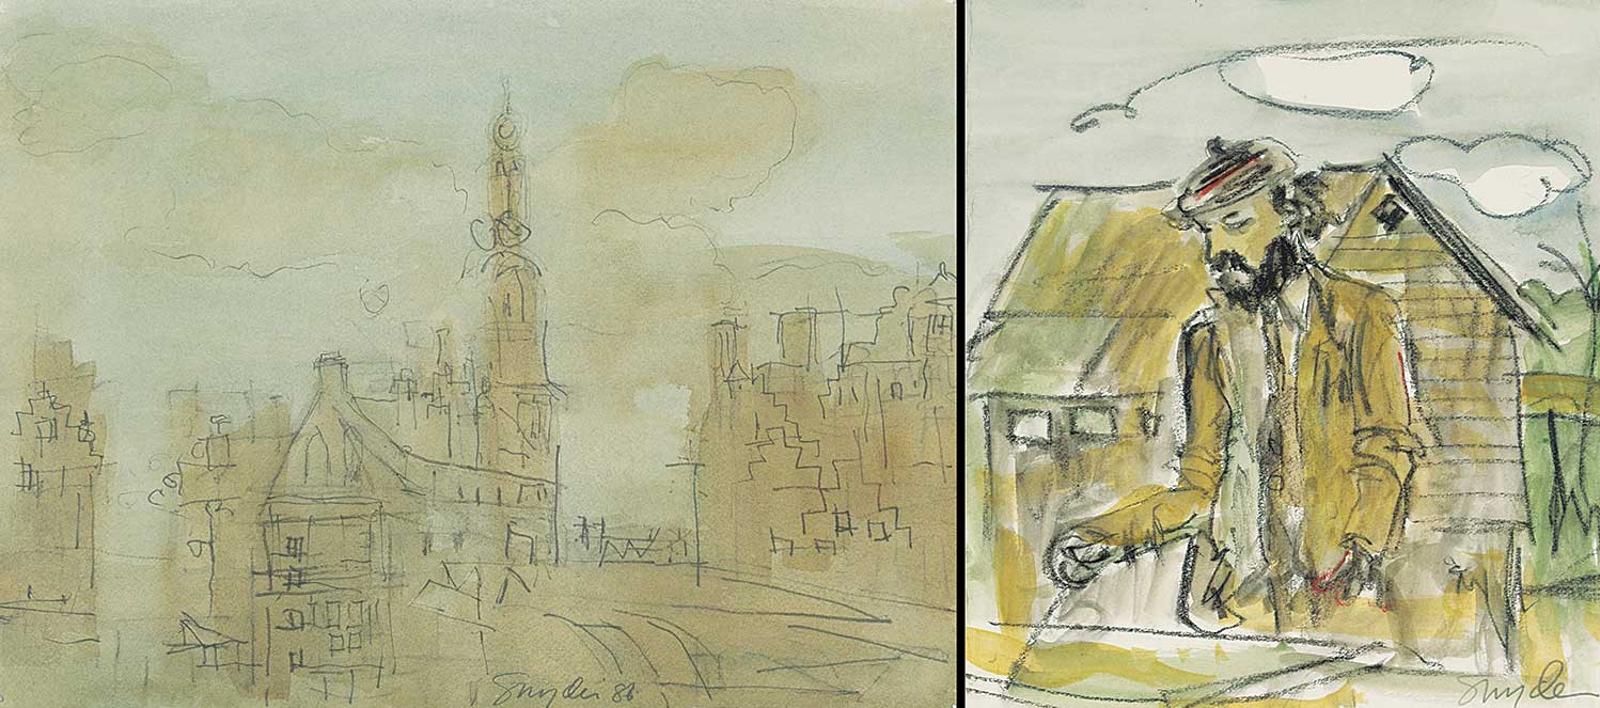 Gordon Snyder (1951) - Clock Tower, Amsterdam / Portrait Sketch